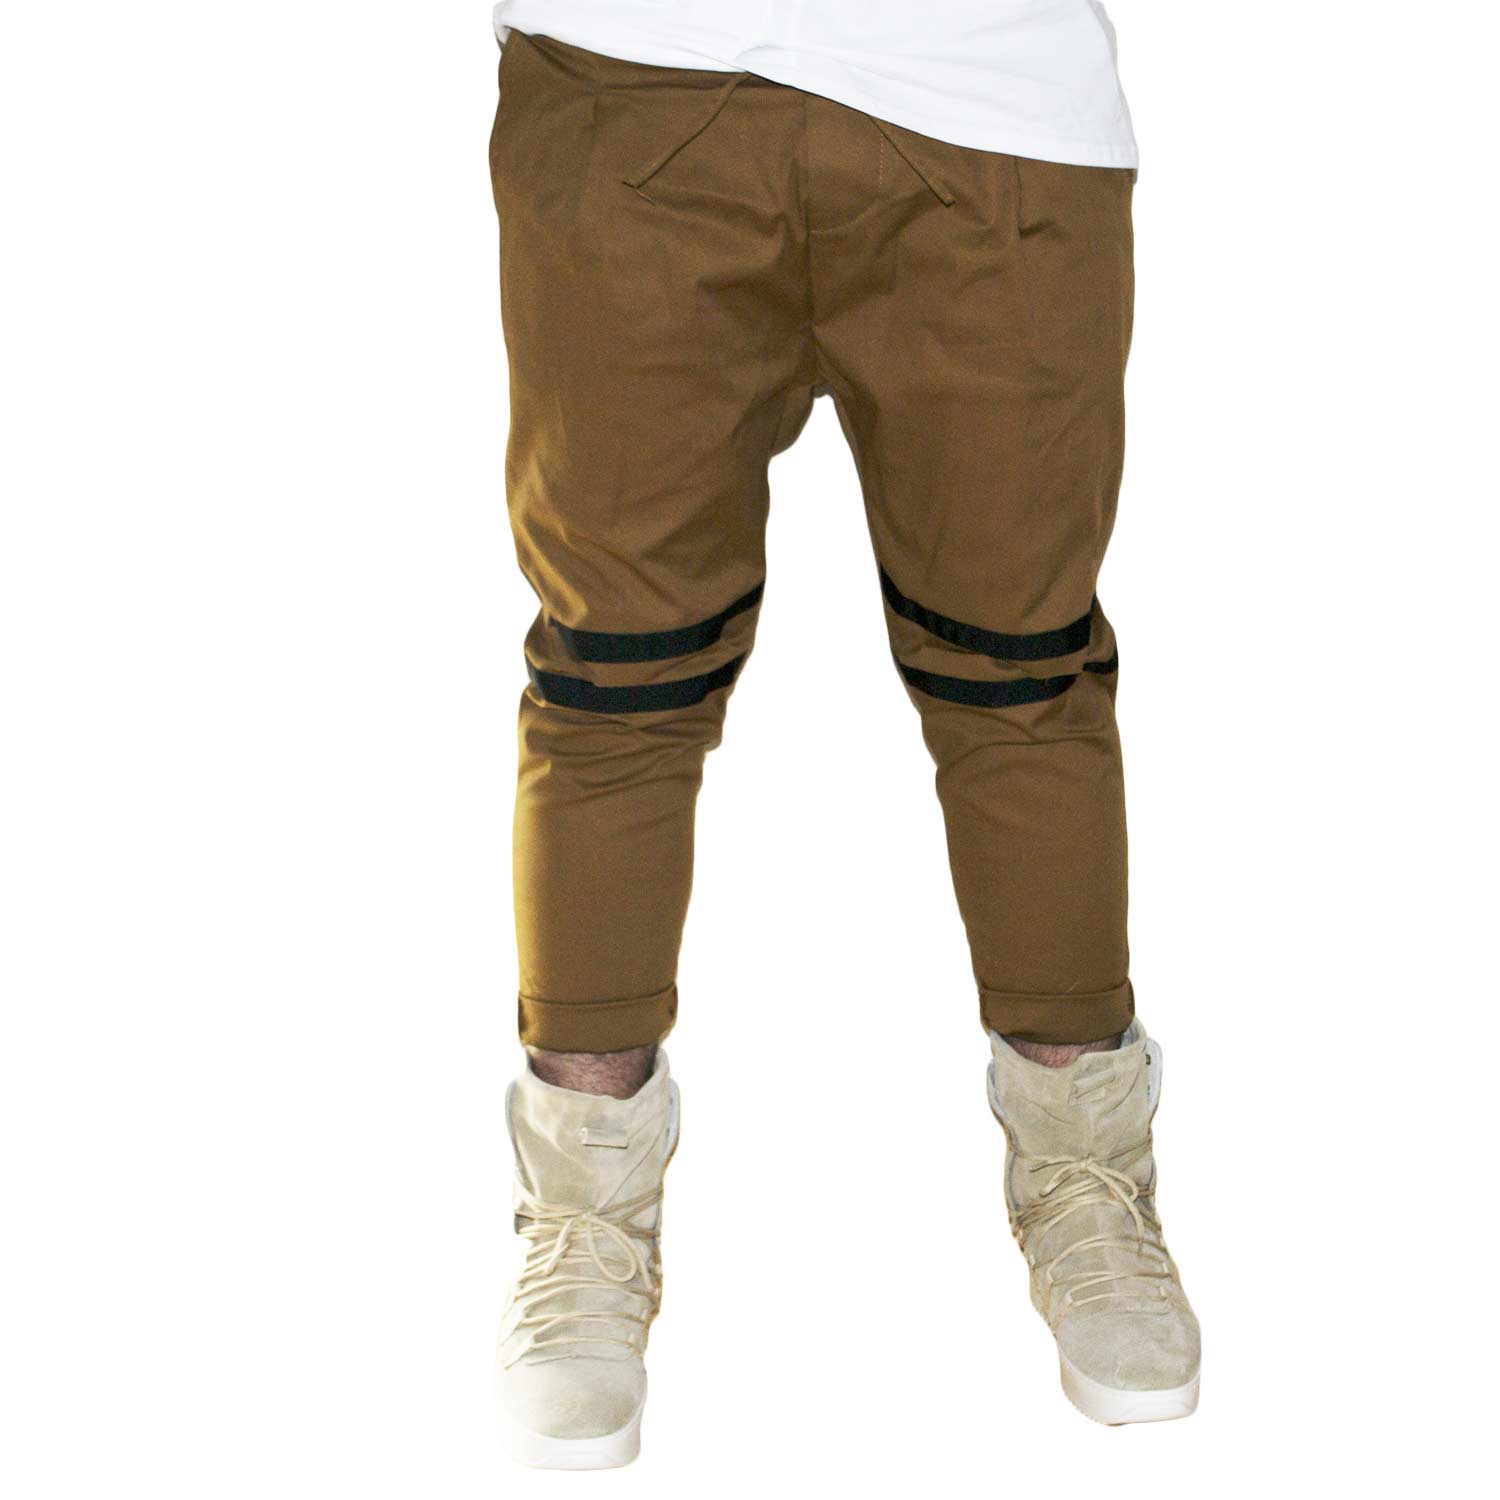 Pantaloni jogger marroni con elastico e coulisse e tasche laterali strappi sul ginocchio striscia nera moda giovane.